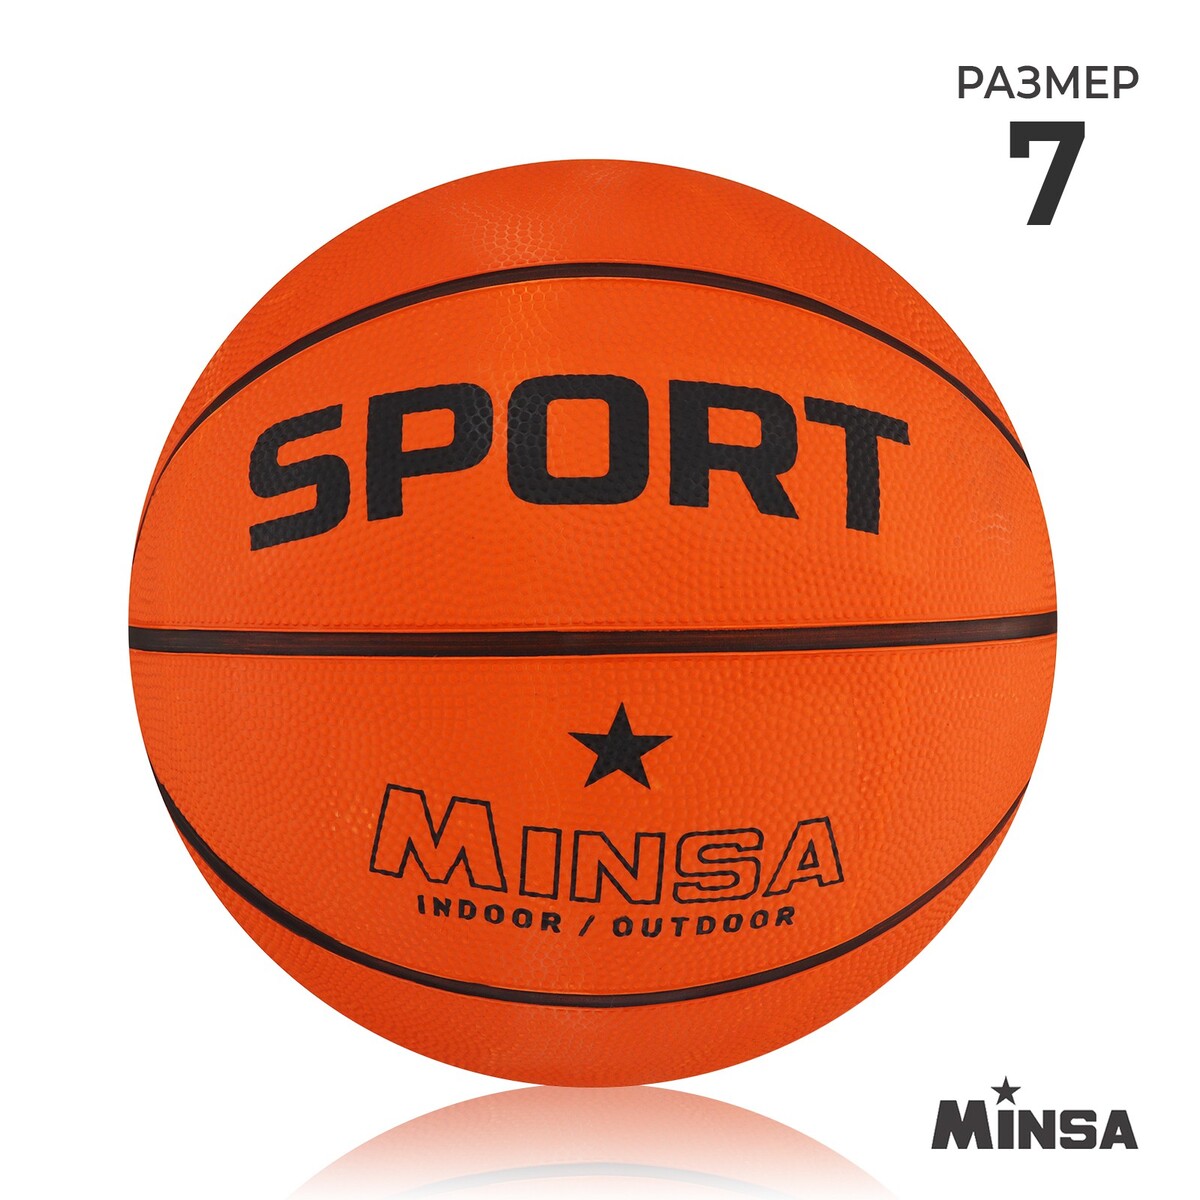 Мяч баскетбольный minsa sport, пвх, клееный, 8 панелей, р. 7 мяч баскетбольный minsa sport пвх клееный 8 панелей р 5